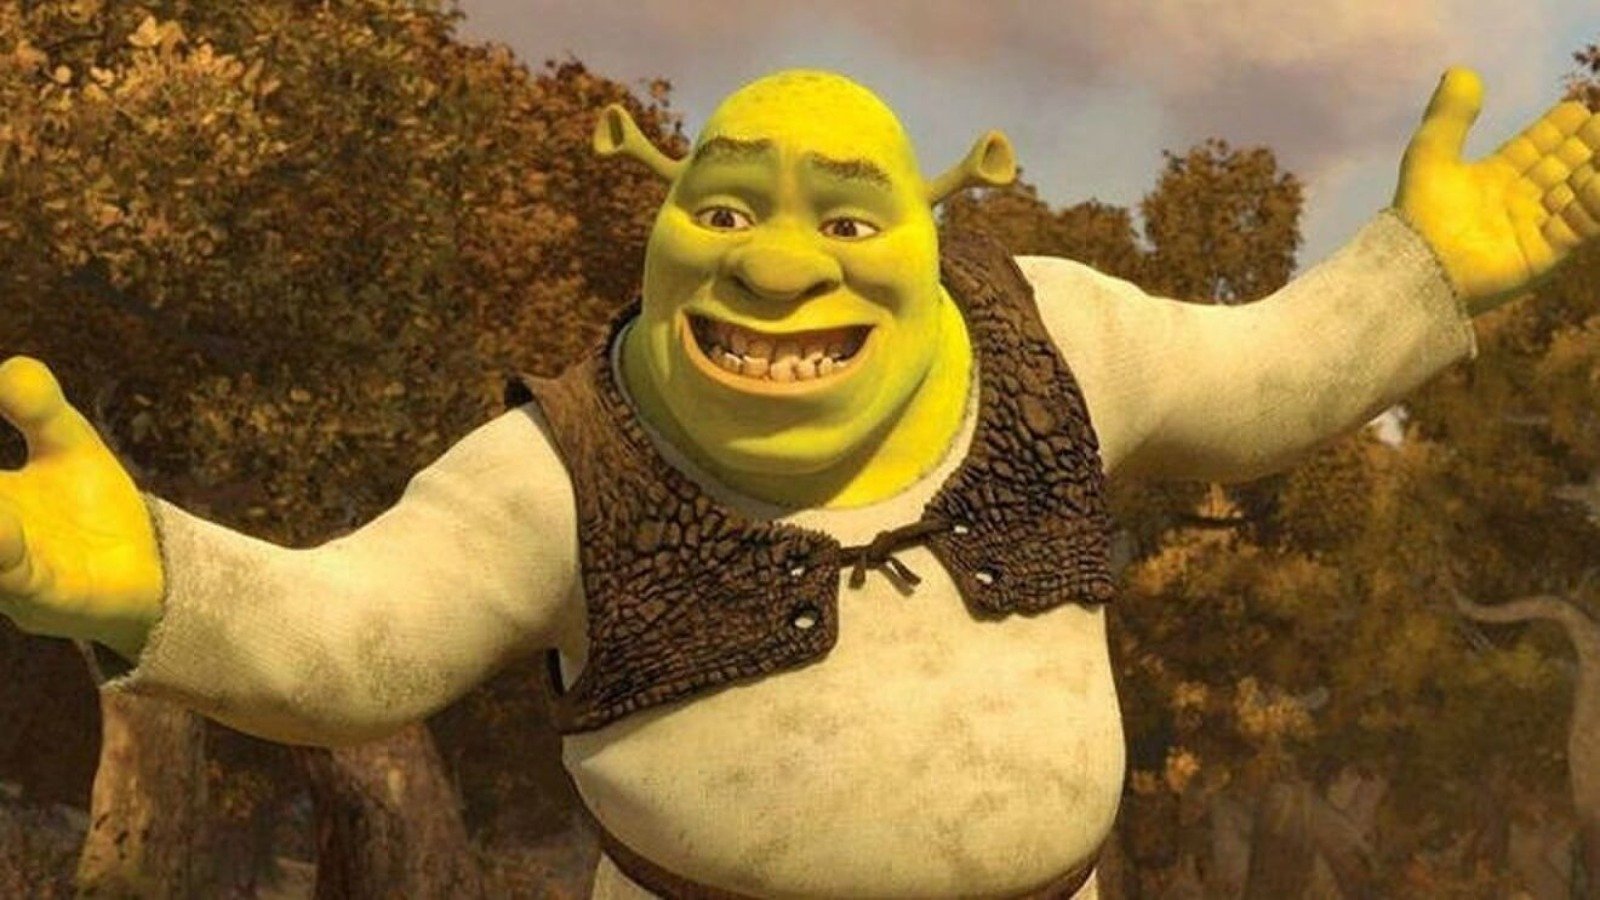 Prince Charming 'Shrek' Memes Are Taking Over TikTok